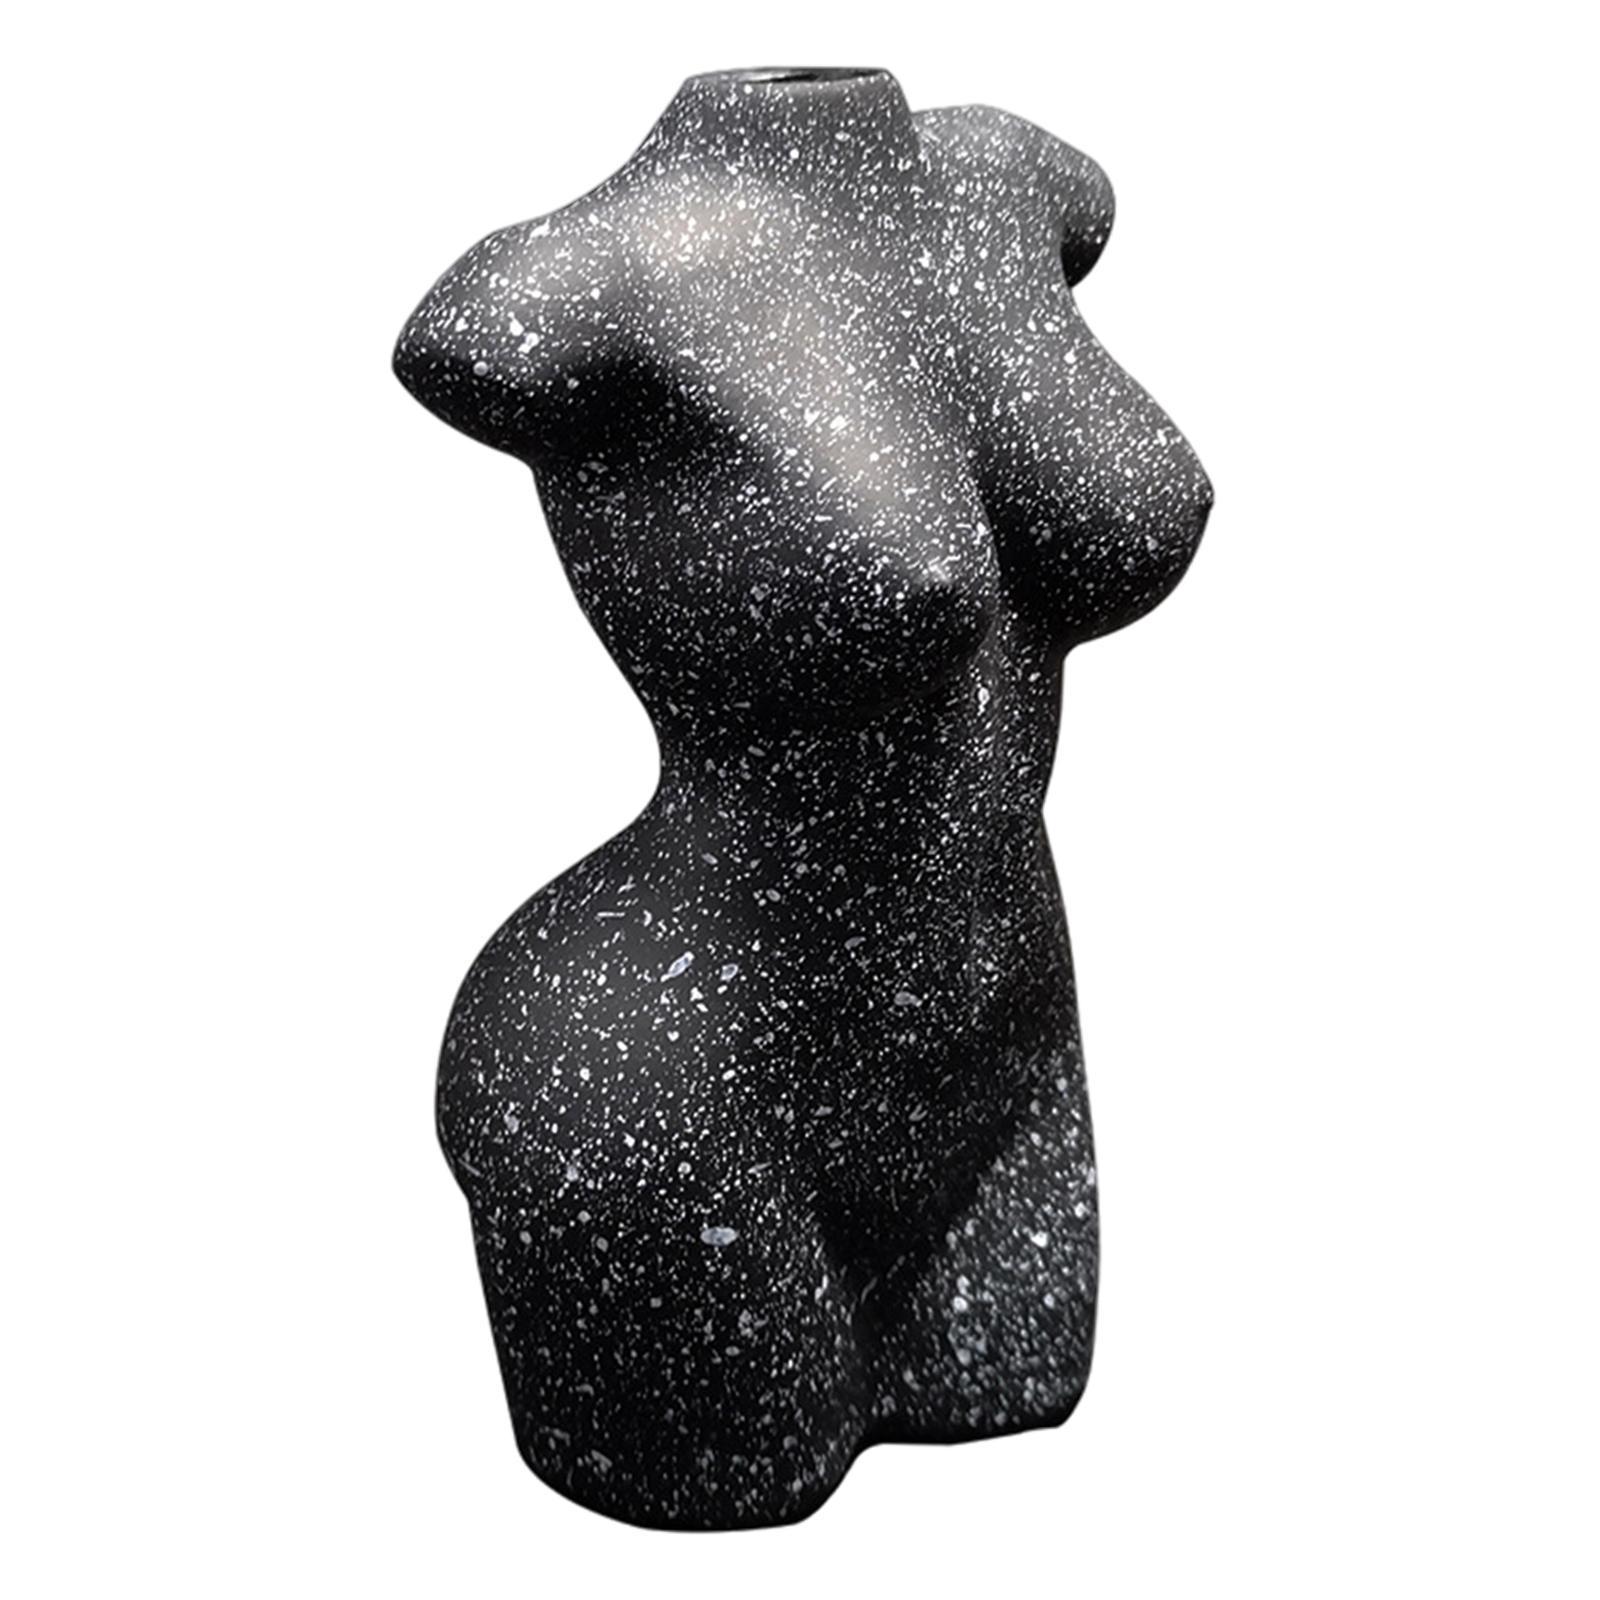 Resin Female Body Vase Resin Plants Pot Women Statues Desktop Ornament Decor